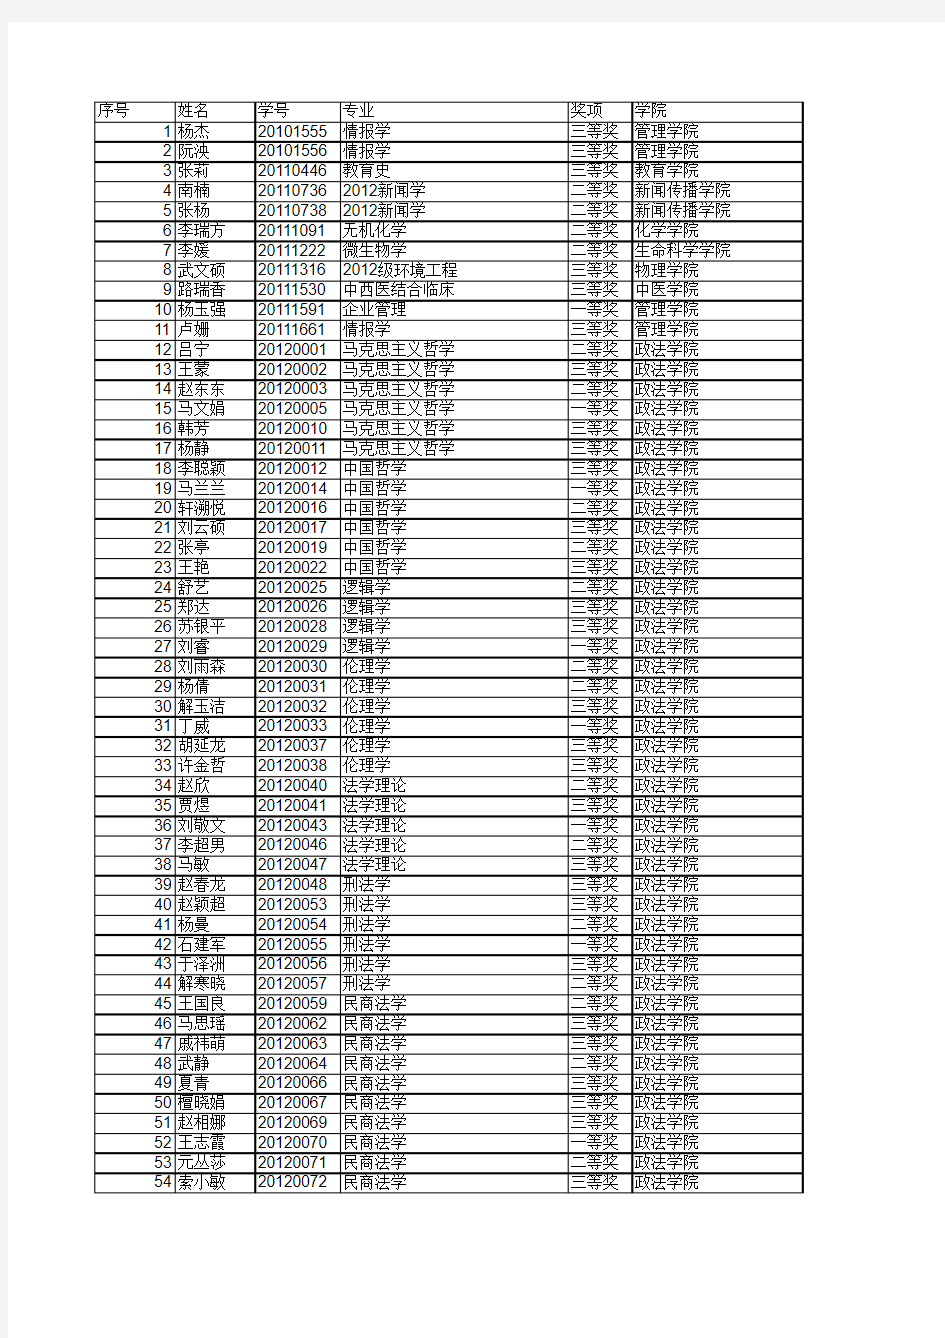 河北大学2014级奖学金名单